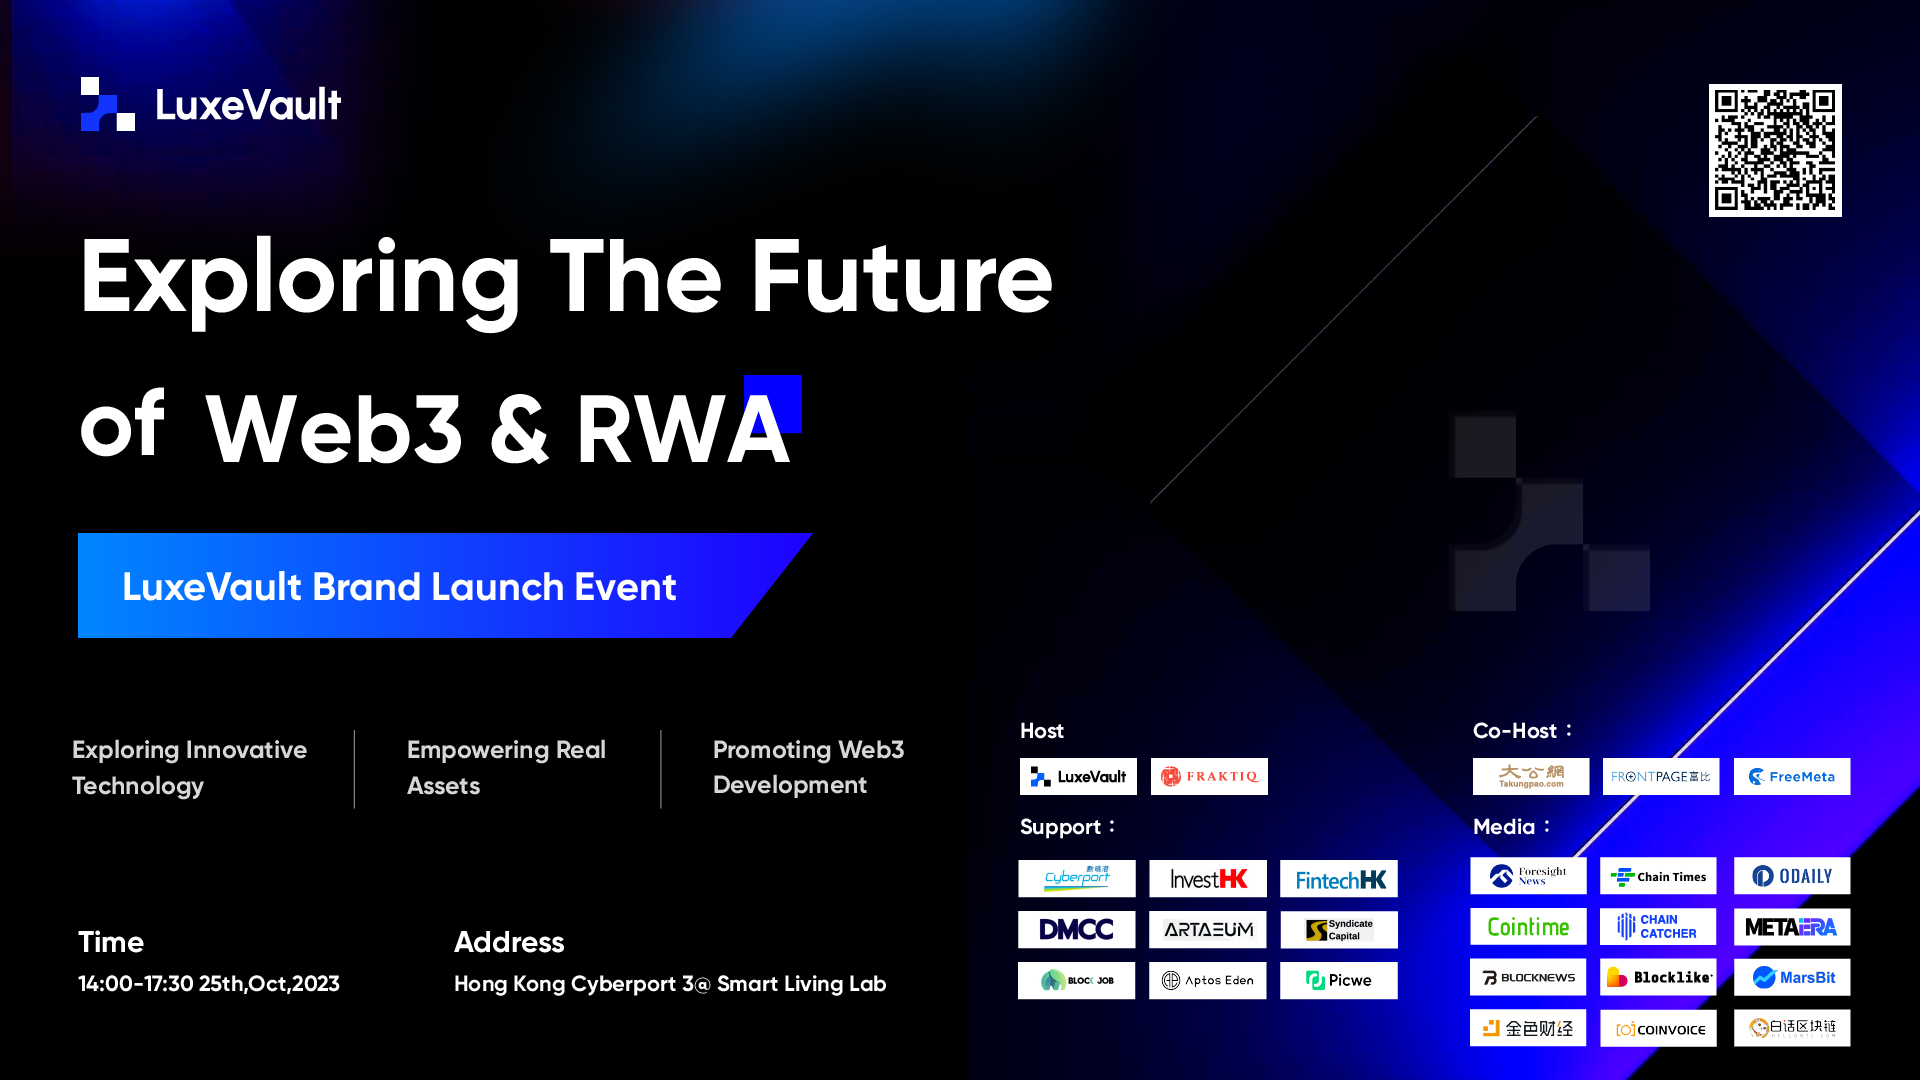 「探索Web3 & RWA未來發展與LuxeVault品牌發布會」在香港成功舉行，開啟全球數位化的探索與發展